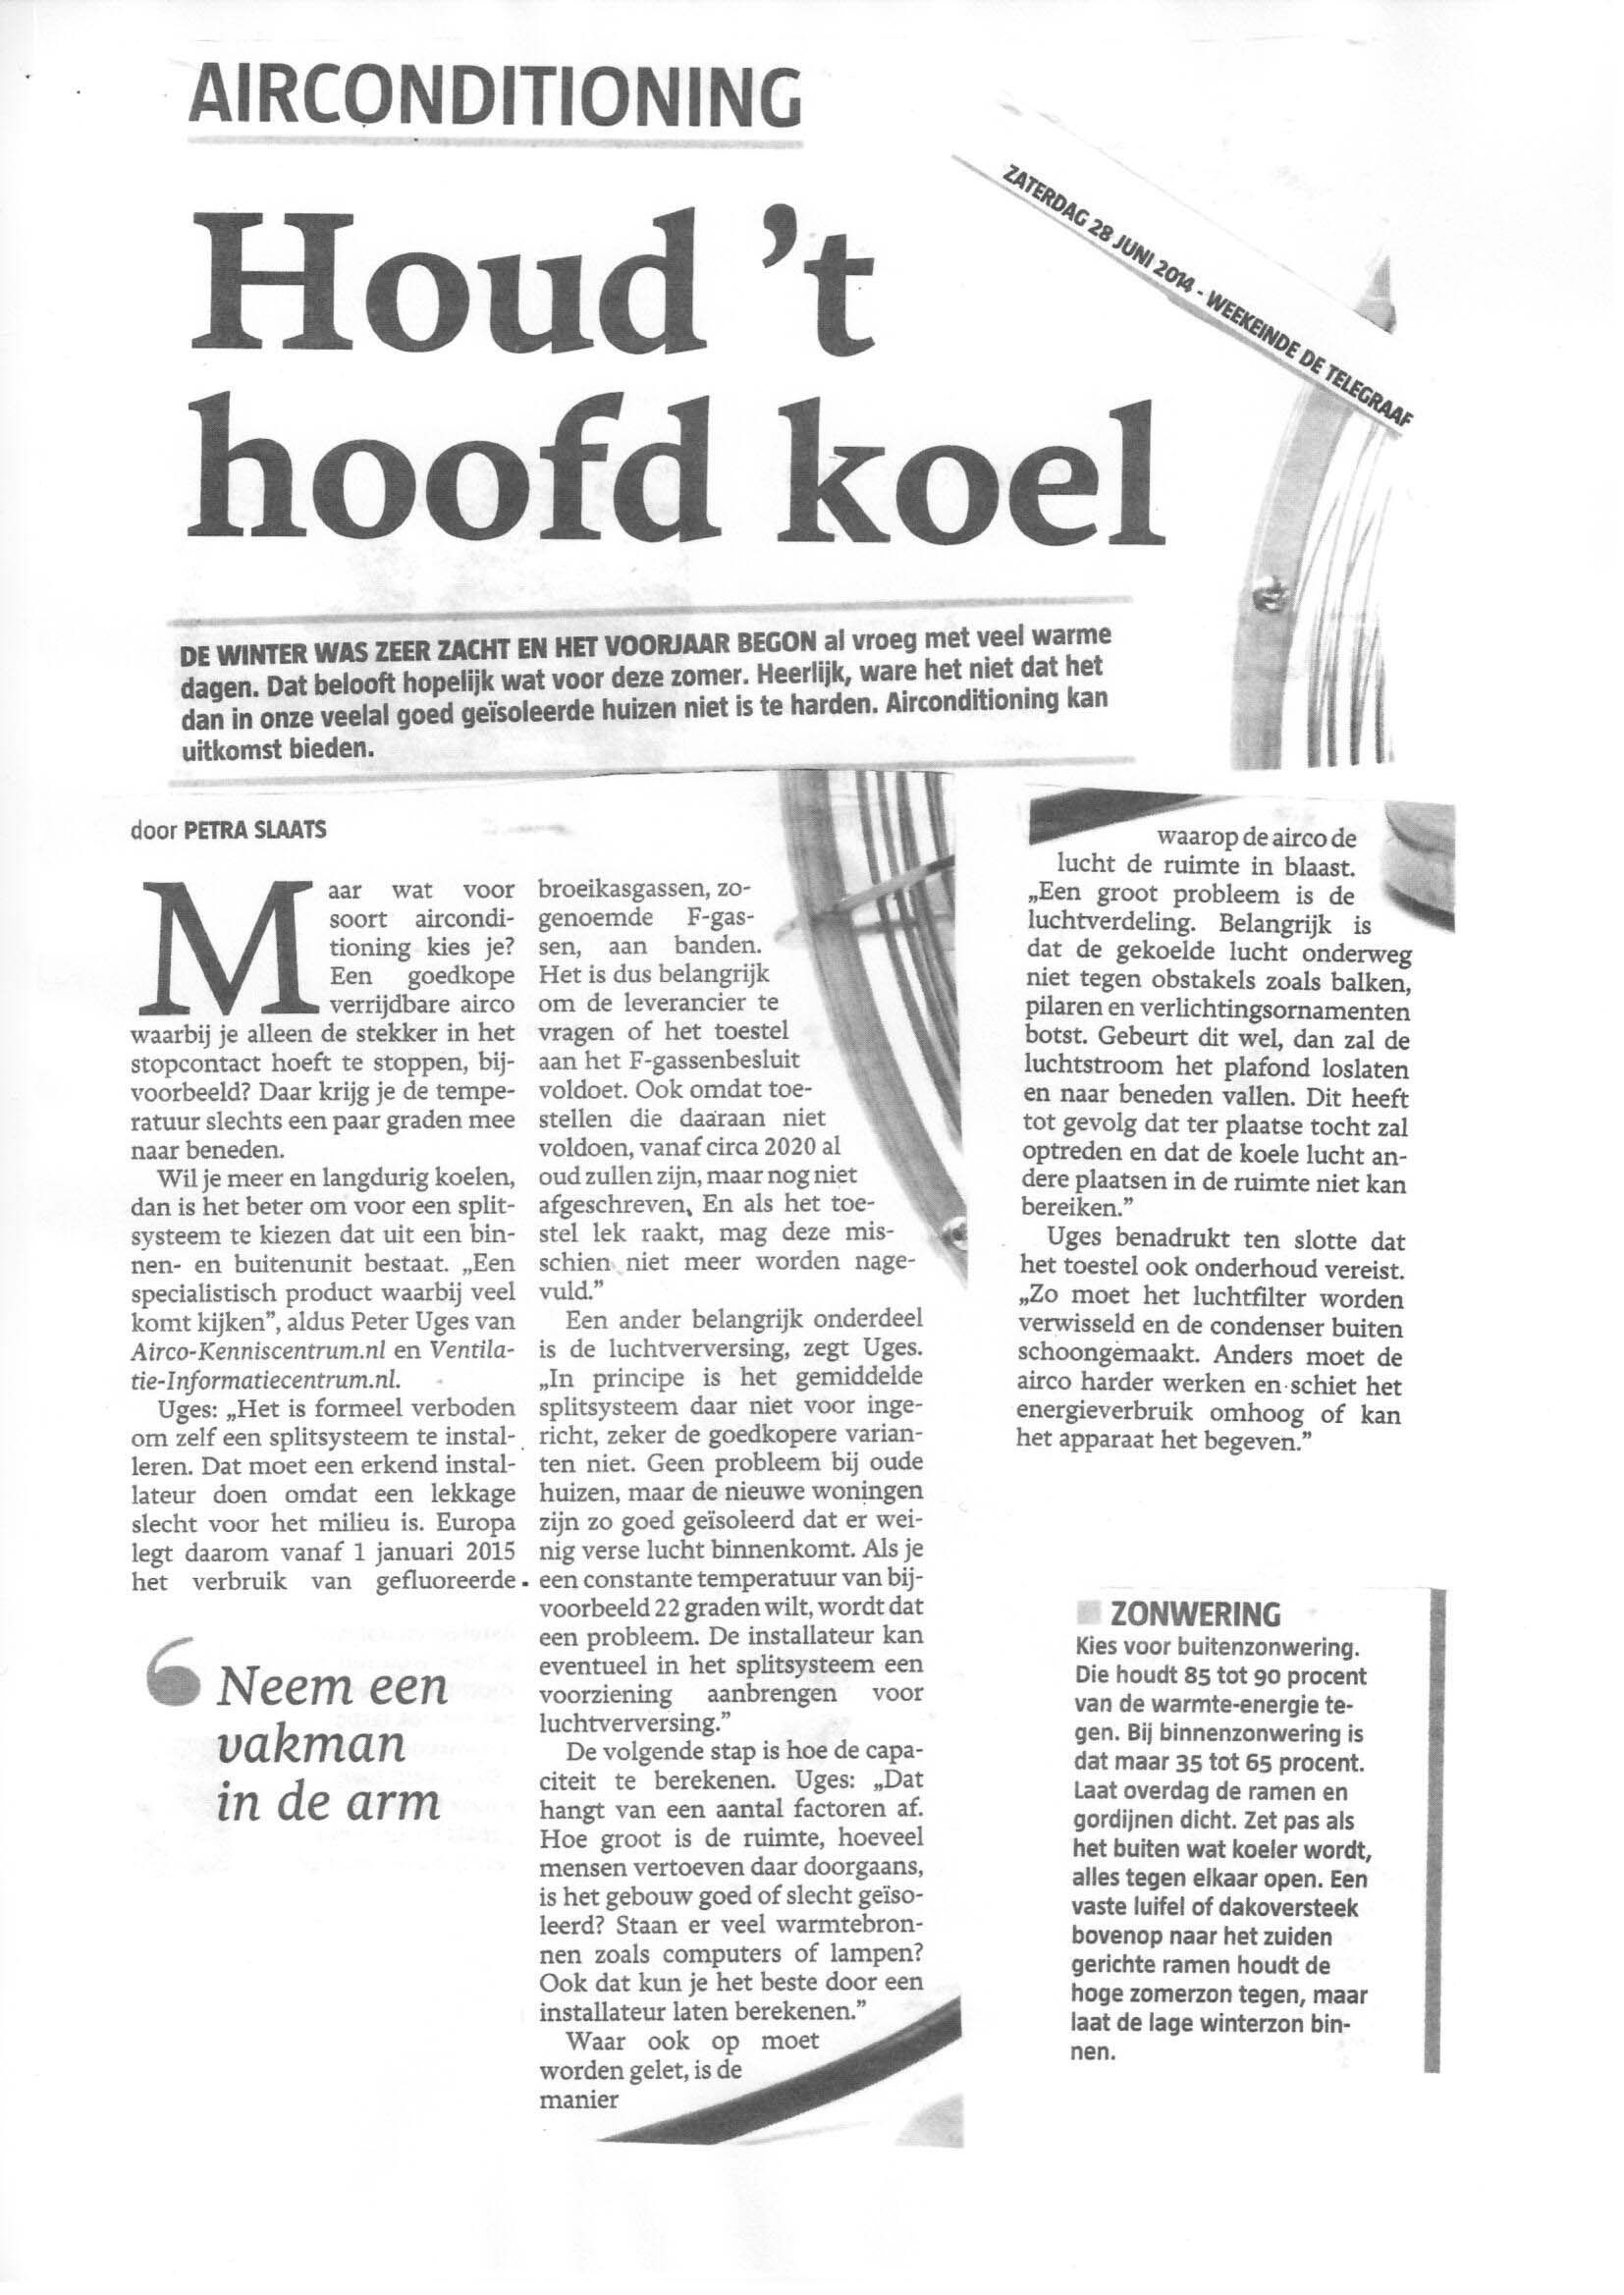 Houdt hoofd koel Telegraaf 28-6-2014